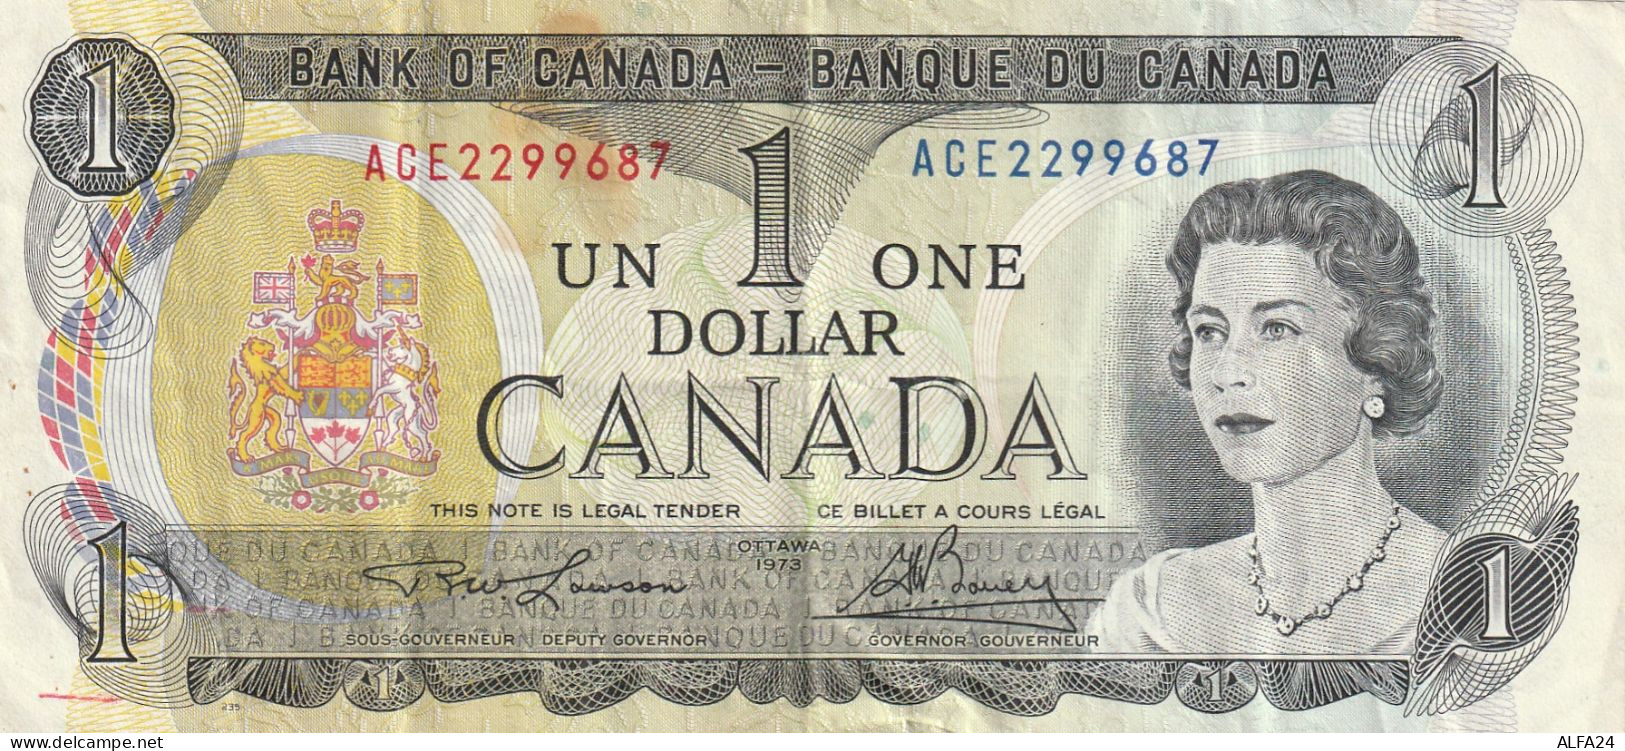 BANCONOTA CANADA 1 DOLLARO VF  (B_511 - Canada